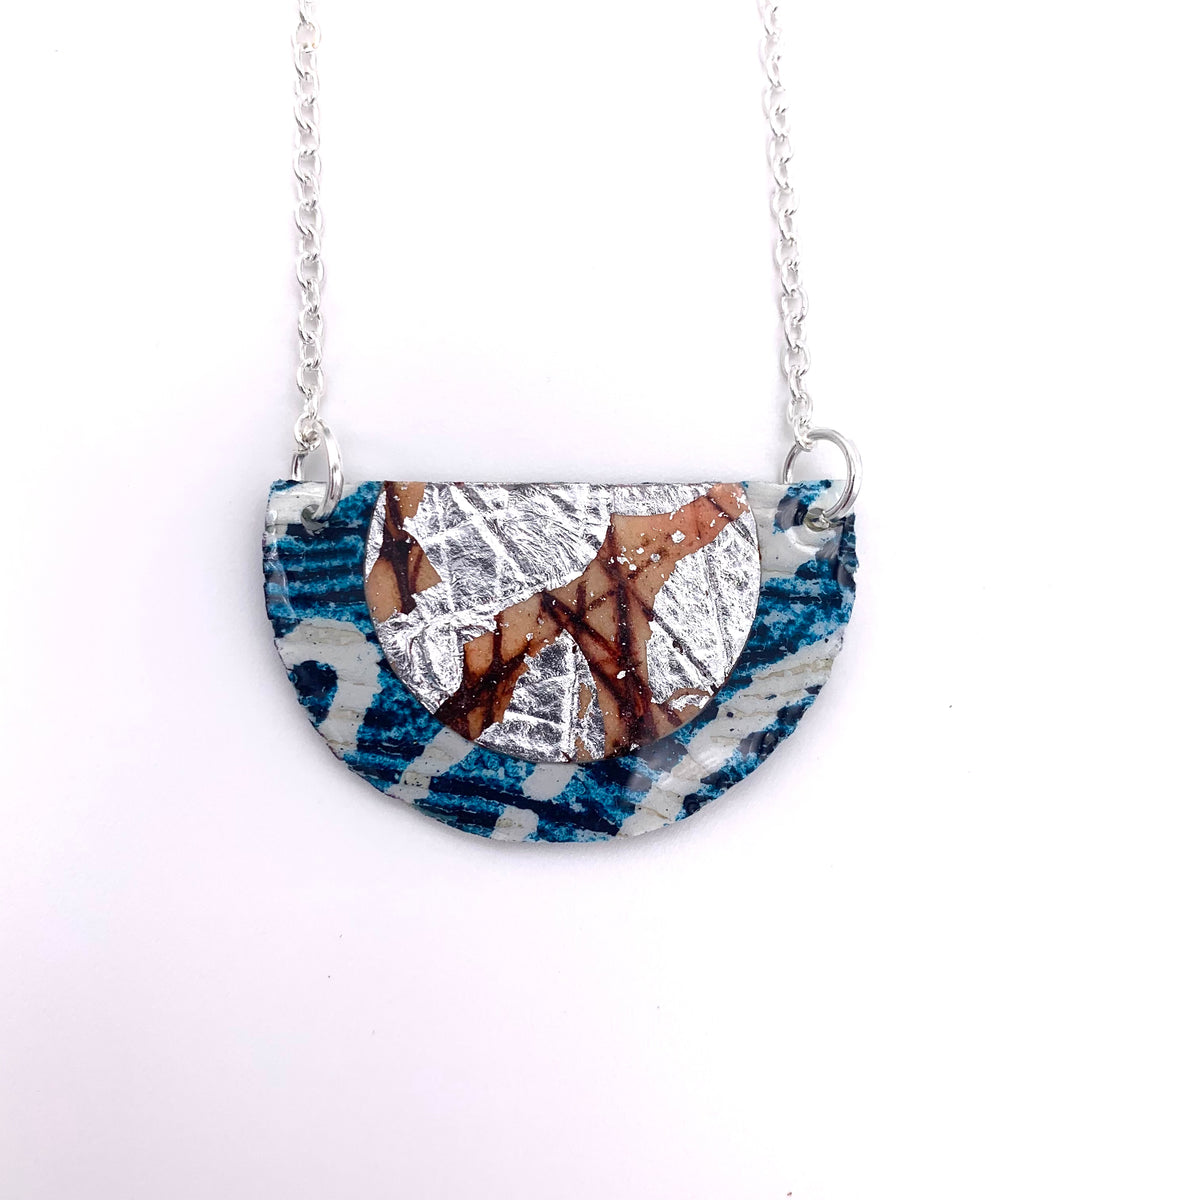 Ovette batik textile necklace in teal/silver/umber